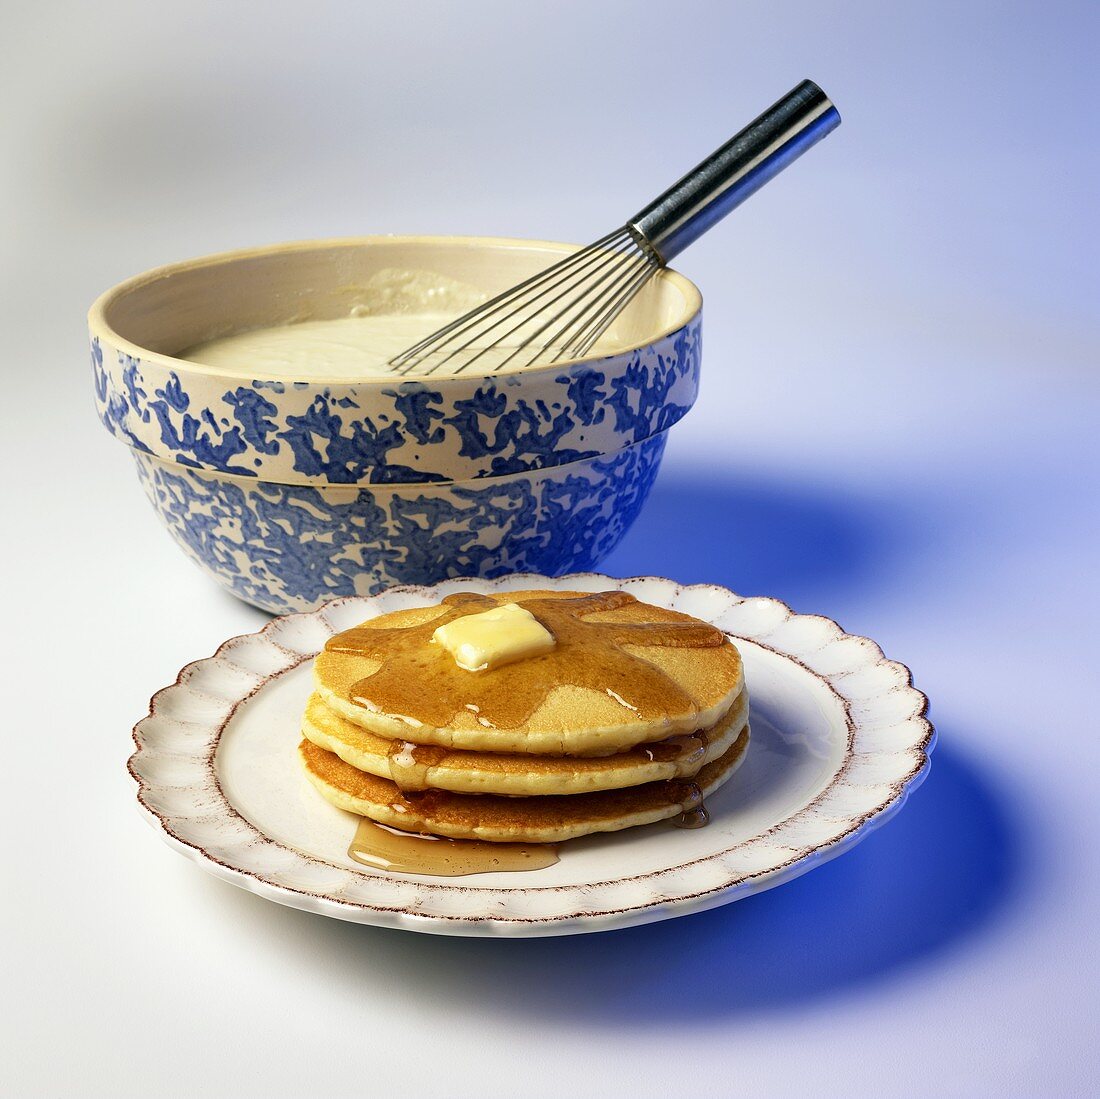 Gestapelte Pancakes mit Butter und Ahornsirup, Teig in Schüssel